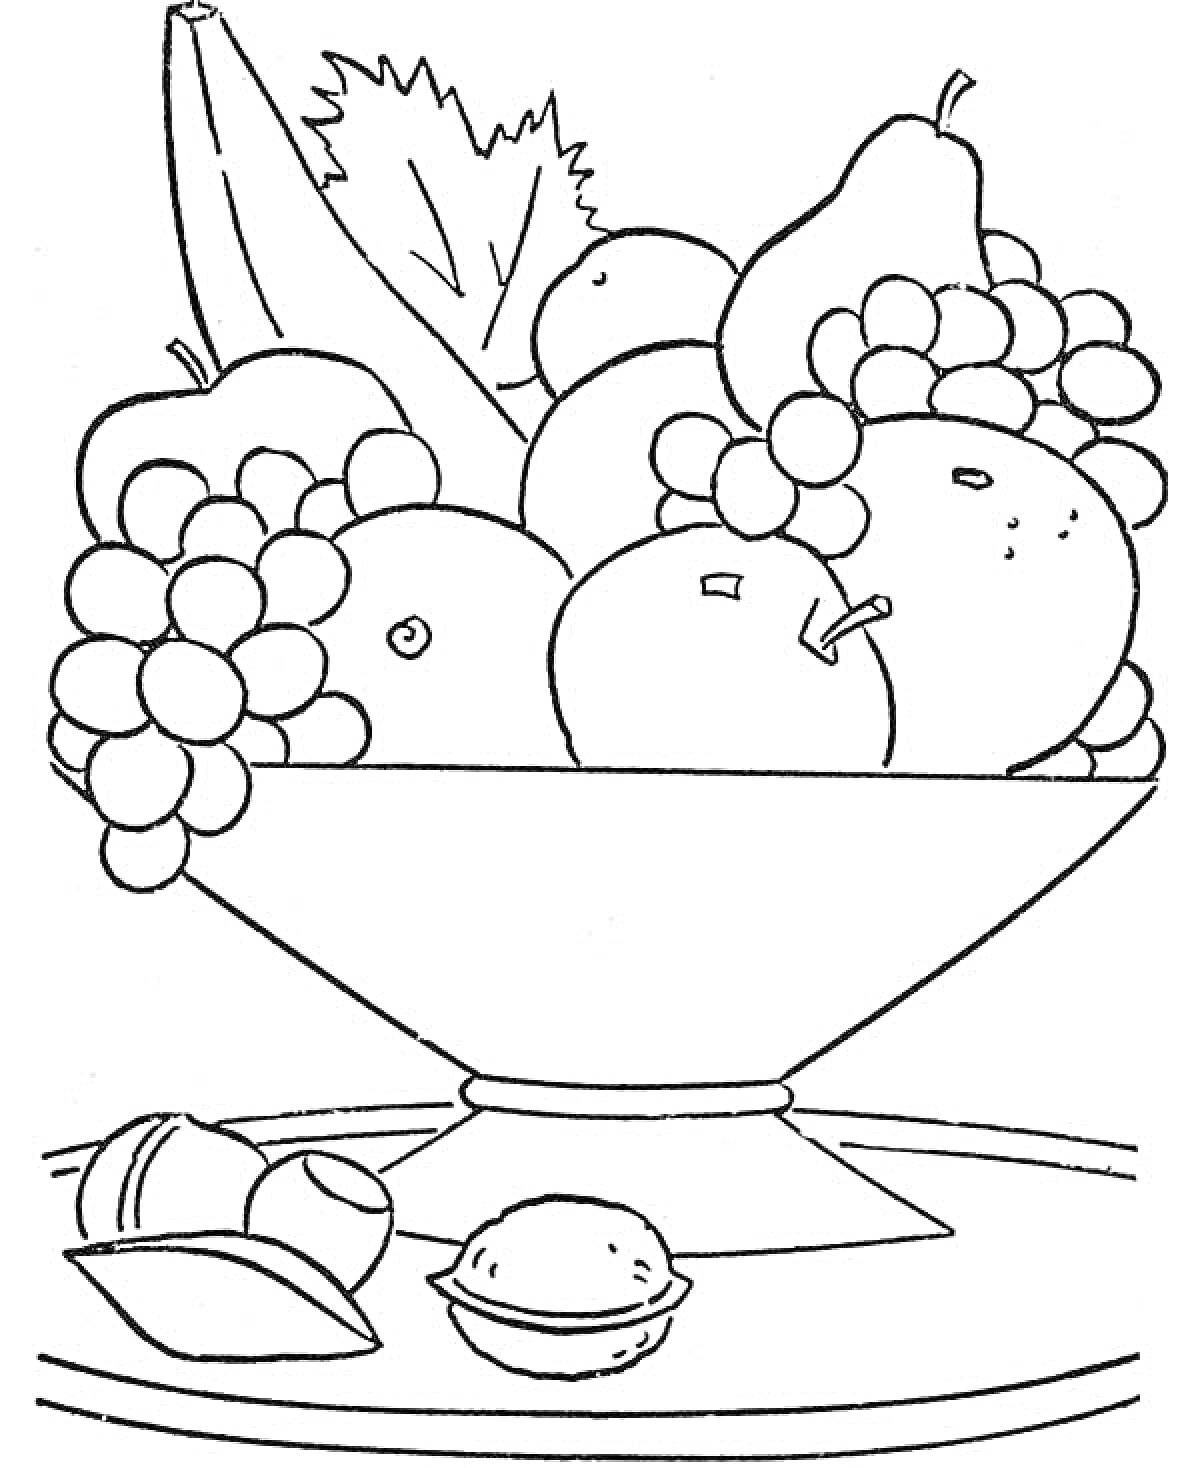 Натюрморт с фруктами и орехами в вазе